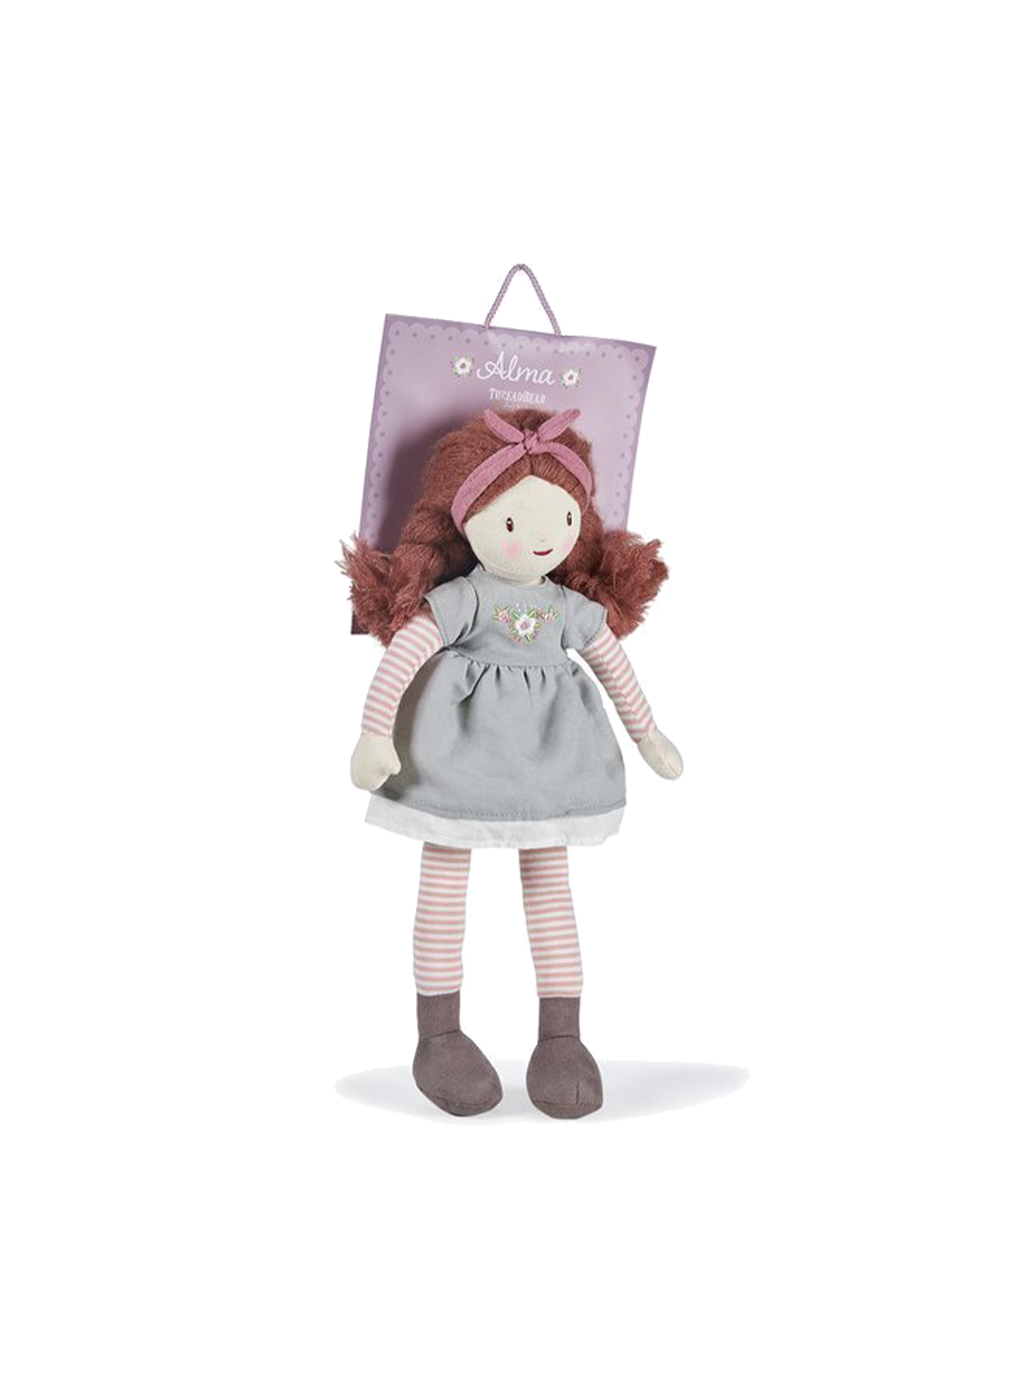 Soft vintage doll